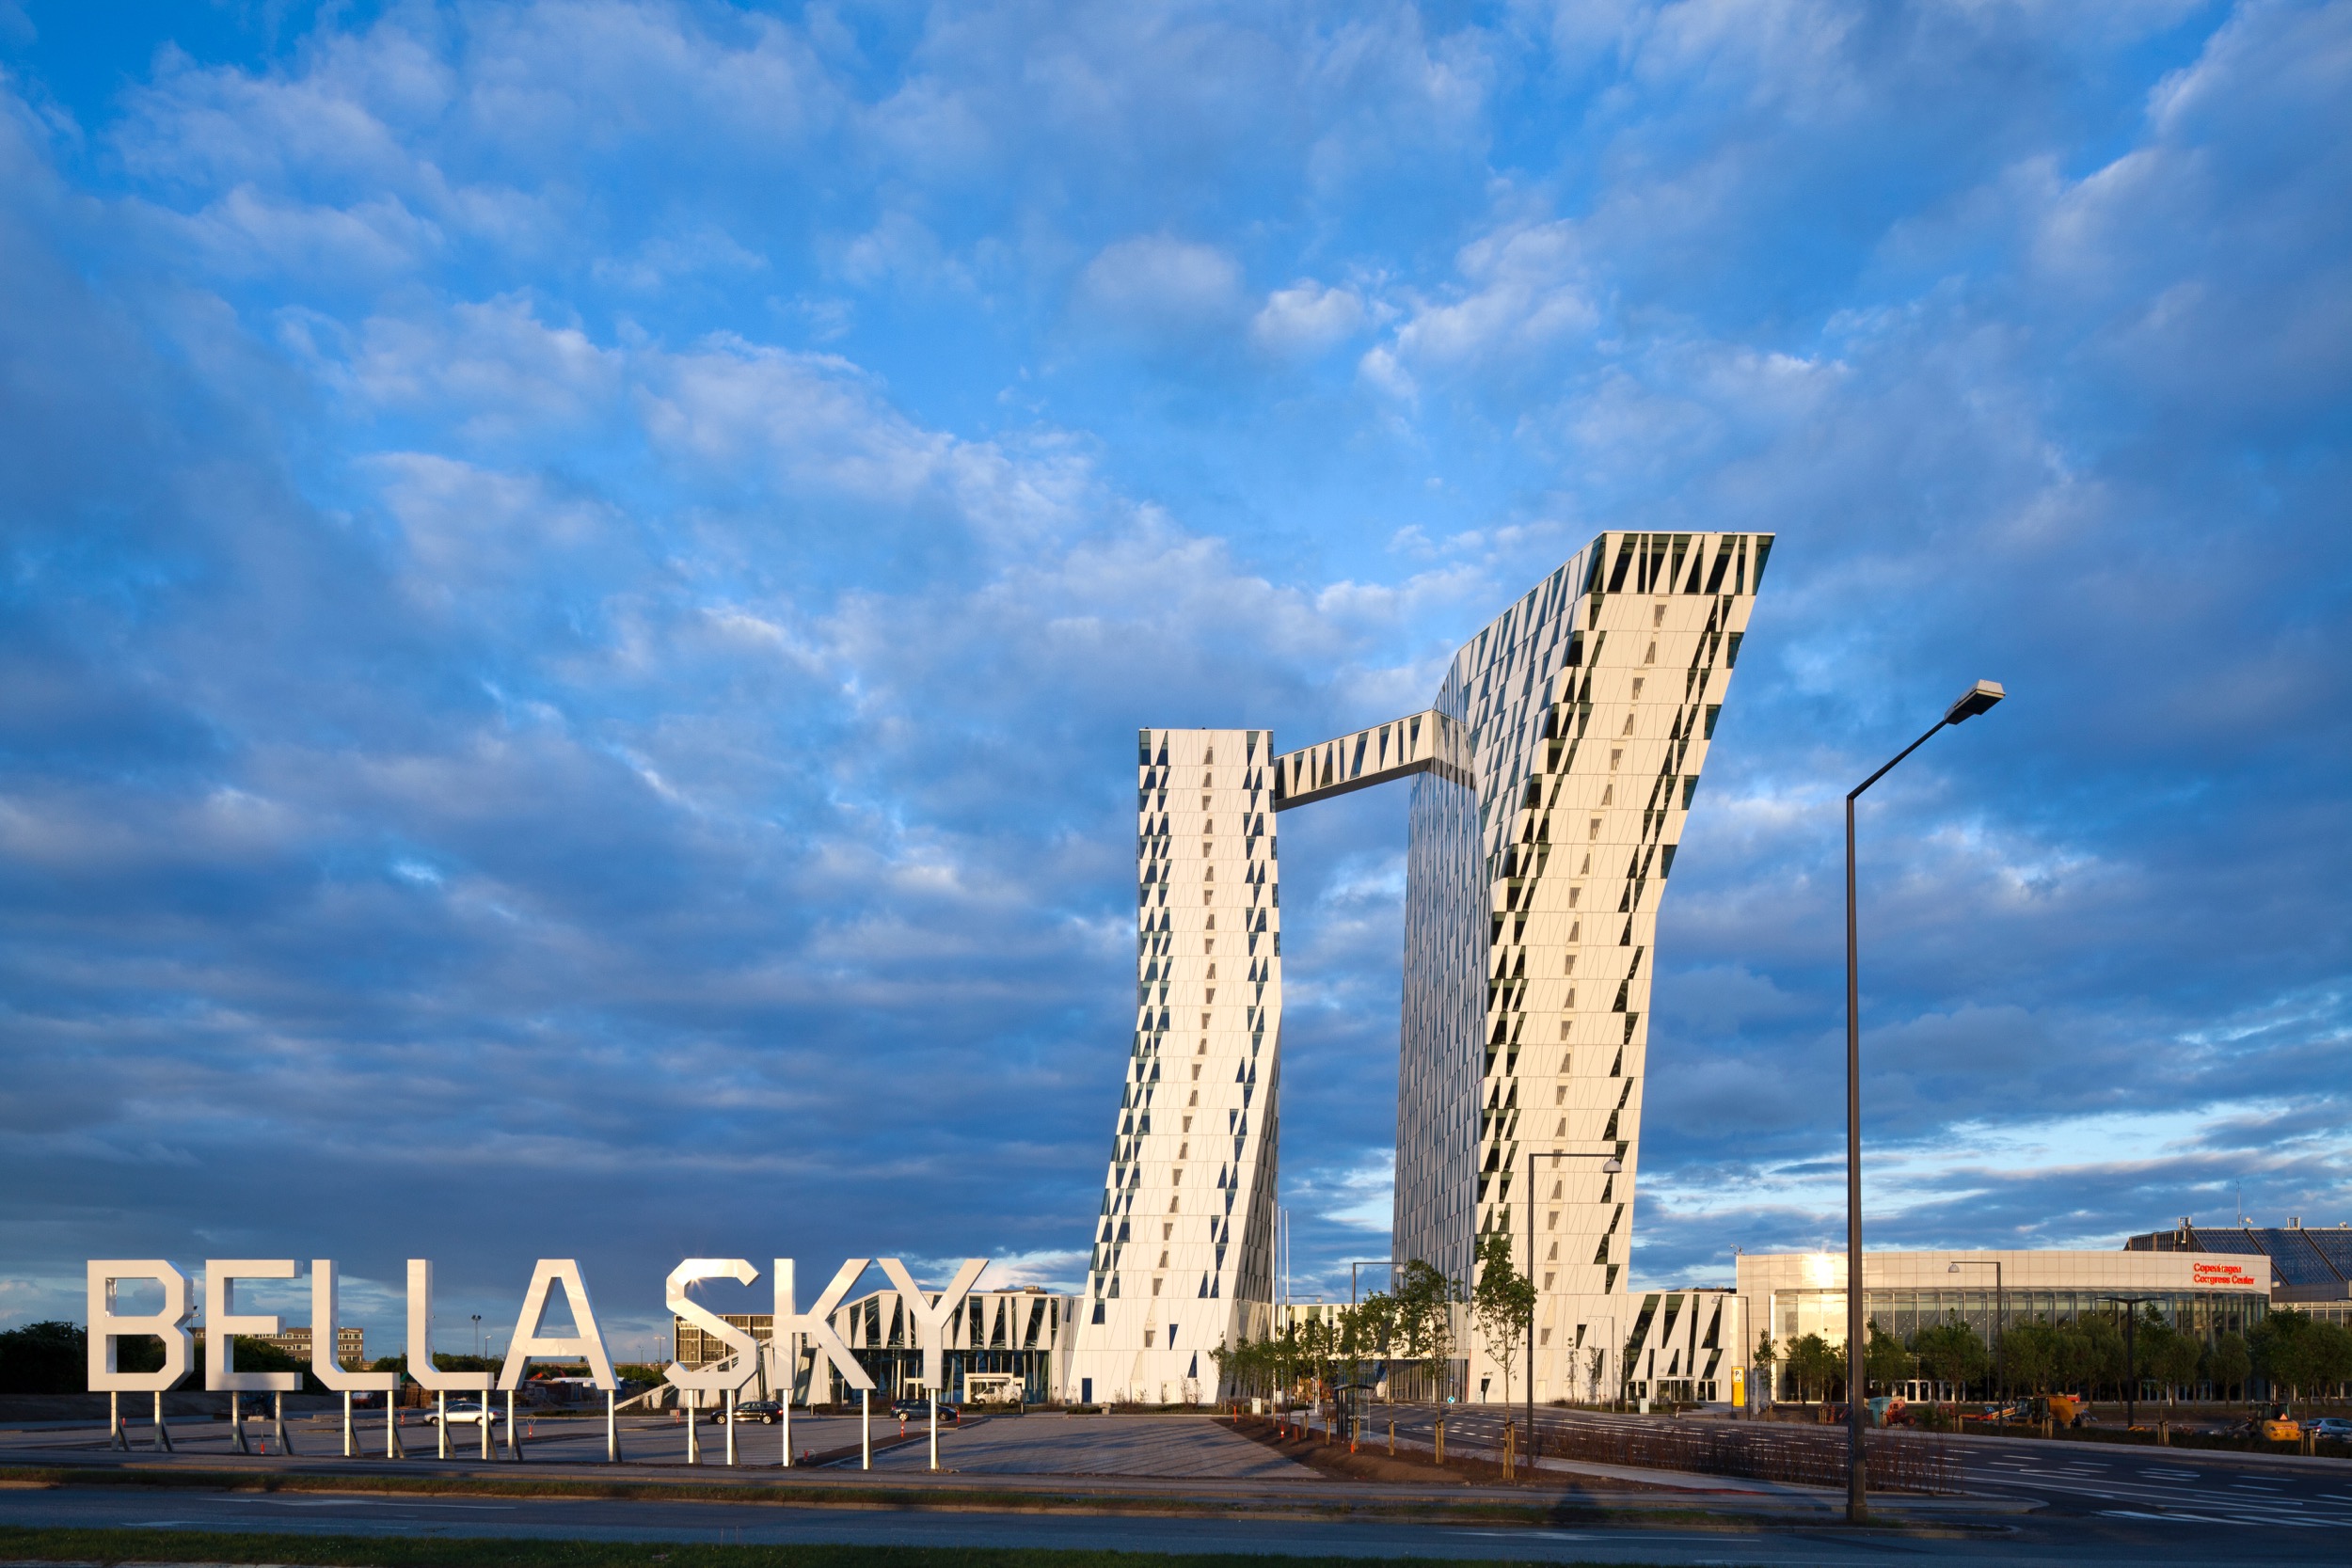 AC Hotel Bella Sky - Danish Architecture - DAC